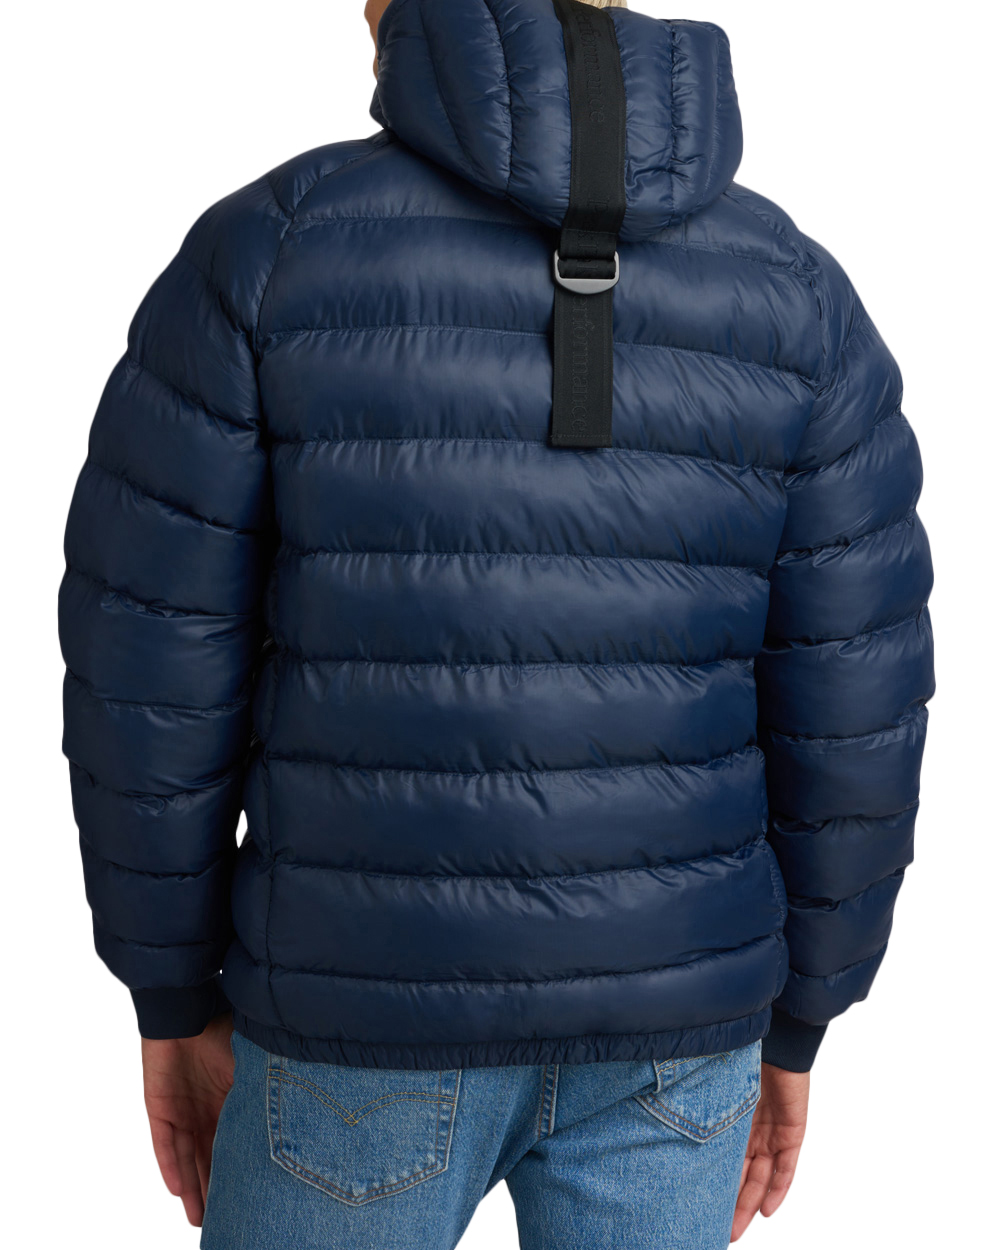 peak-performance-m-tomic-insulated-hood-jacket-1.jpg